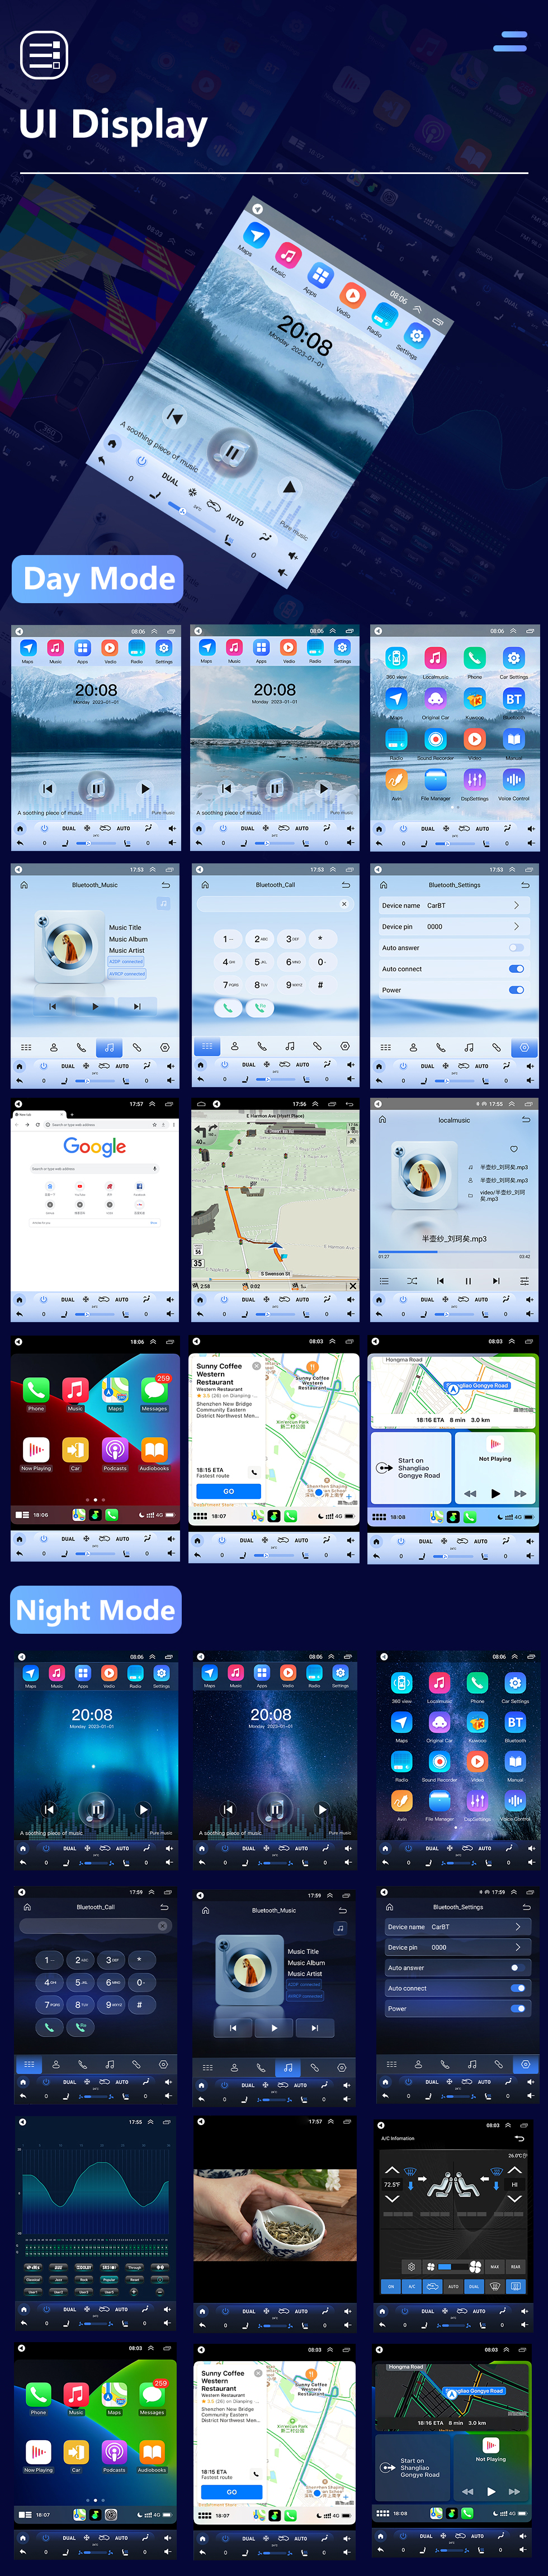 Seicane 9,7-дюймовый Android 10.0 2013-2017 Kia K3 GPS-навигатор Радио с сенсорным экраном HD Поддержка Bluetooth Carplay